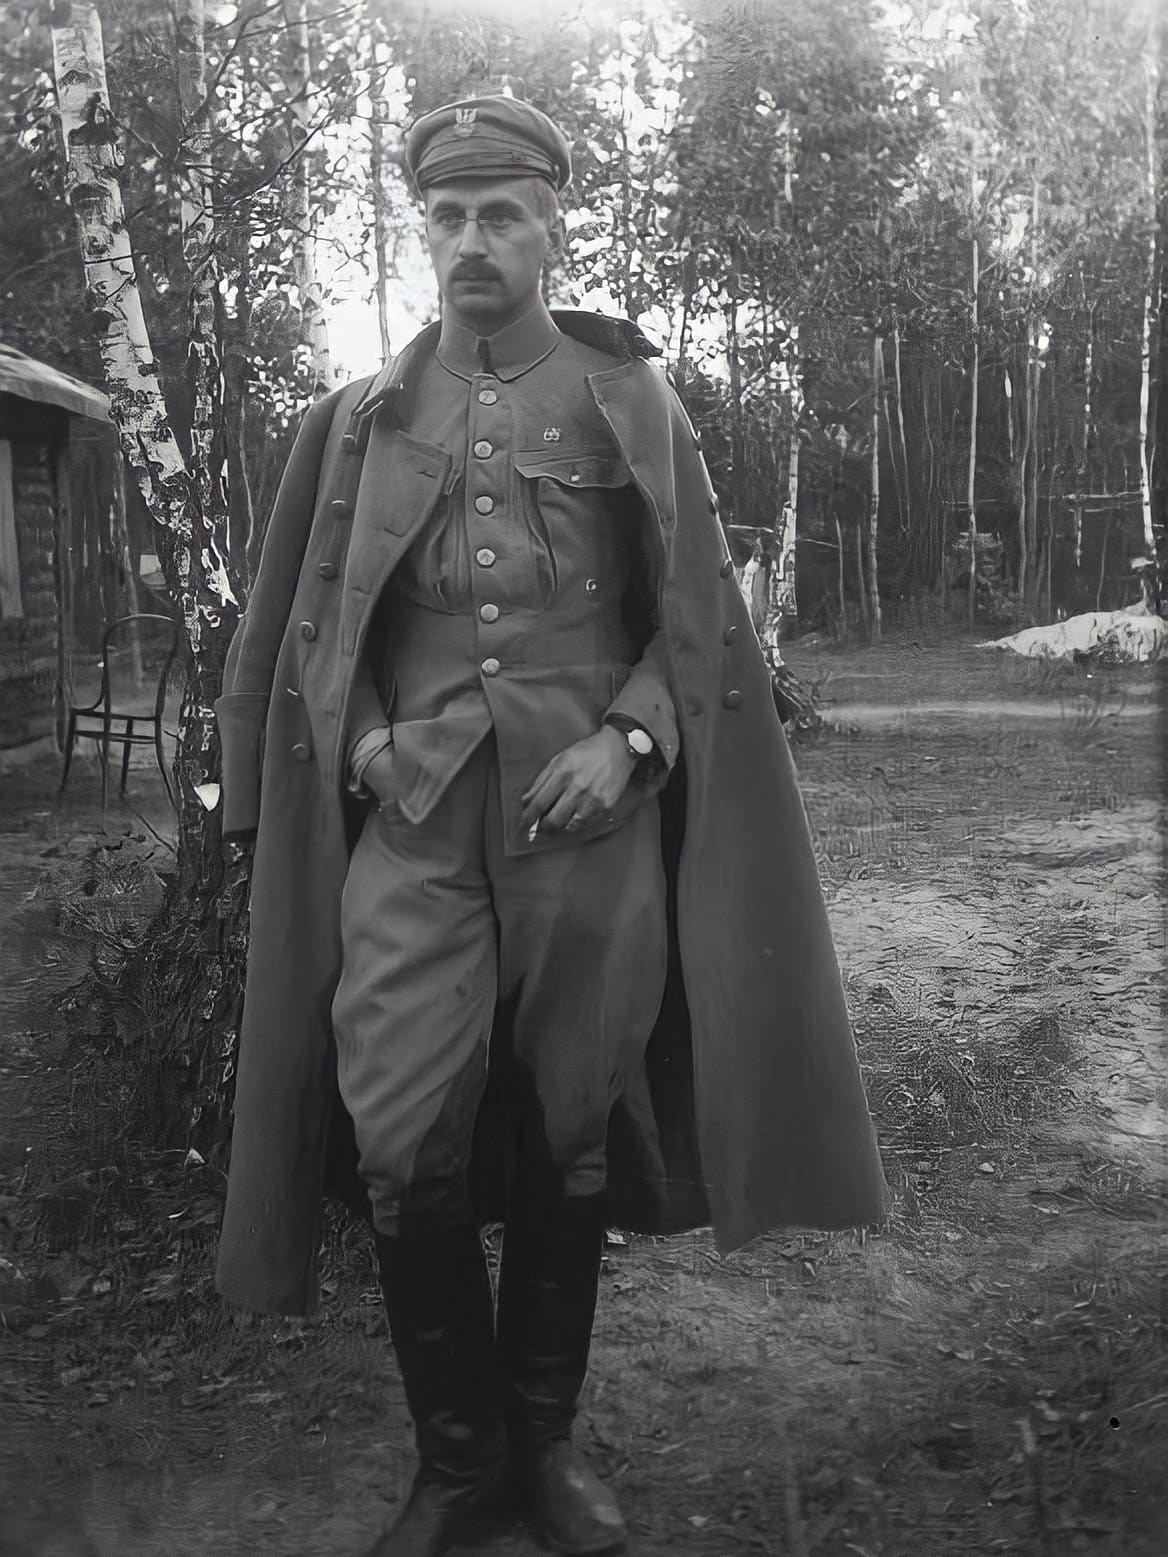 gen Kazimierz Sosnkowski